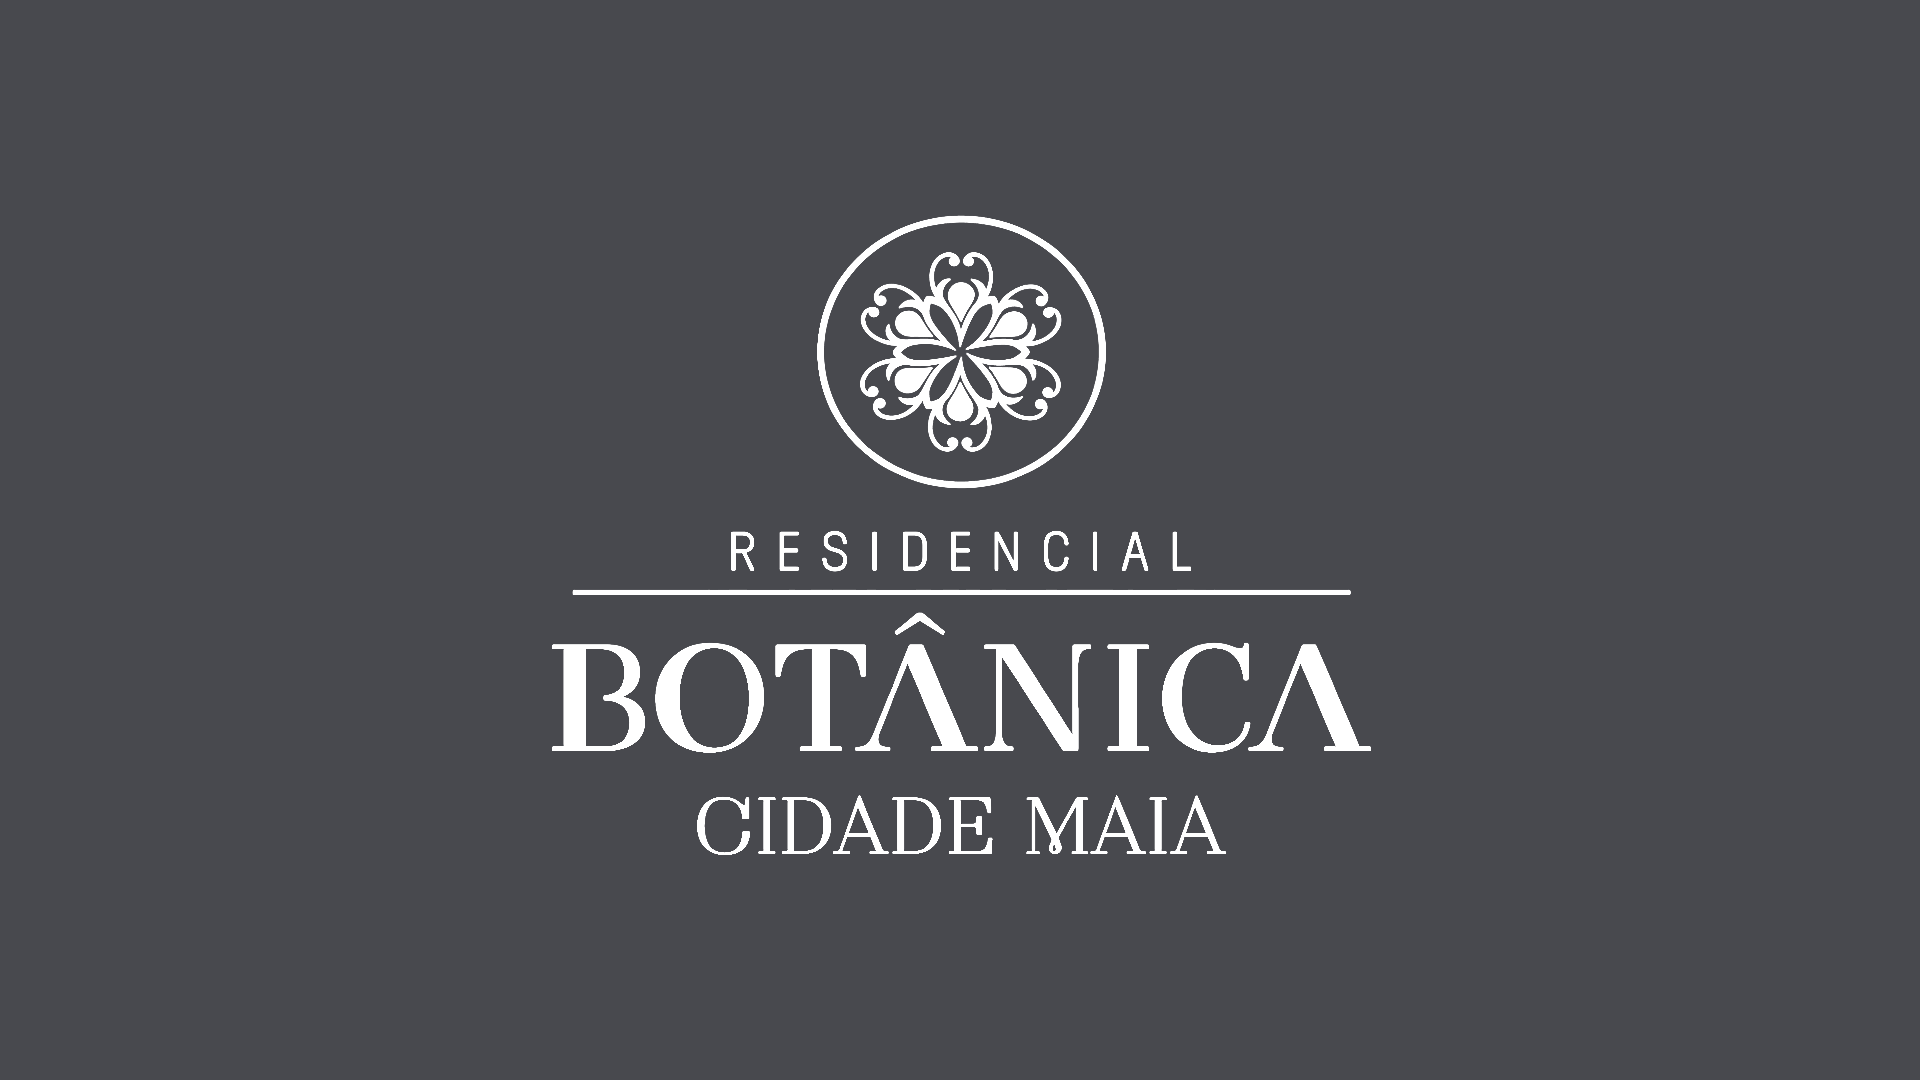 Botânica Cidade Maia — Apartamentos Alto Padrão 04 Dorms.